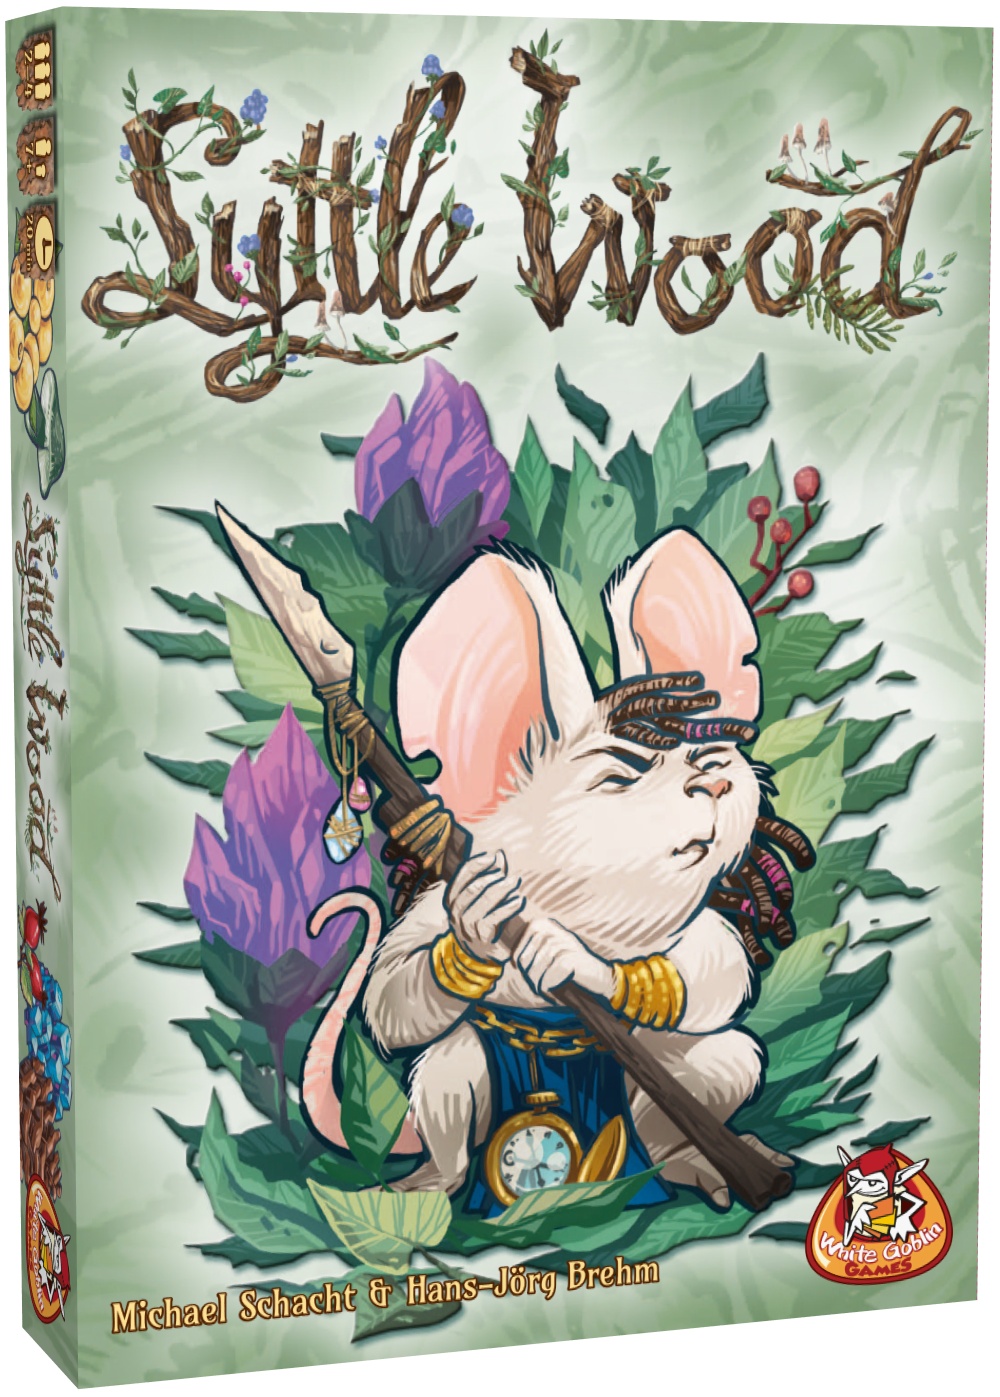 Lyttle Wood